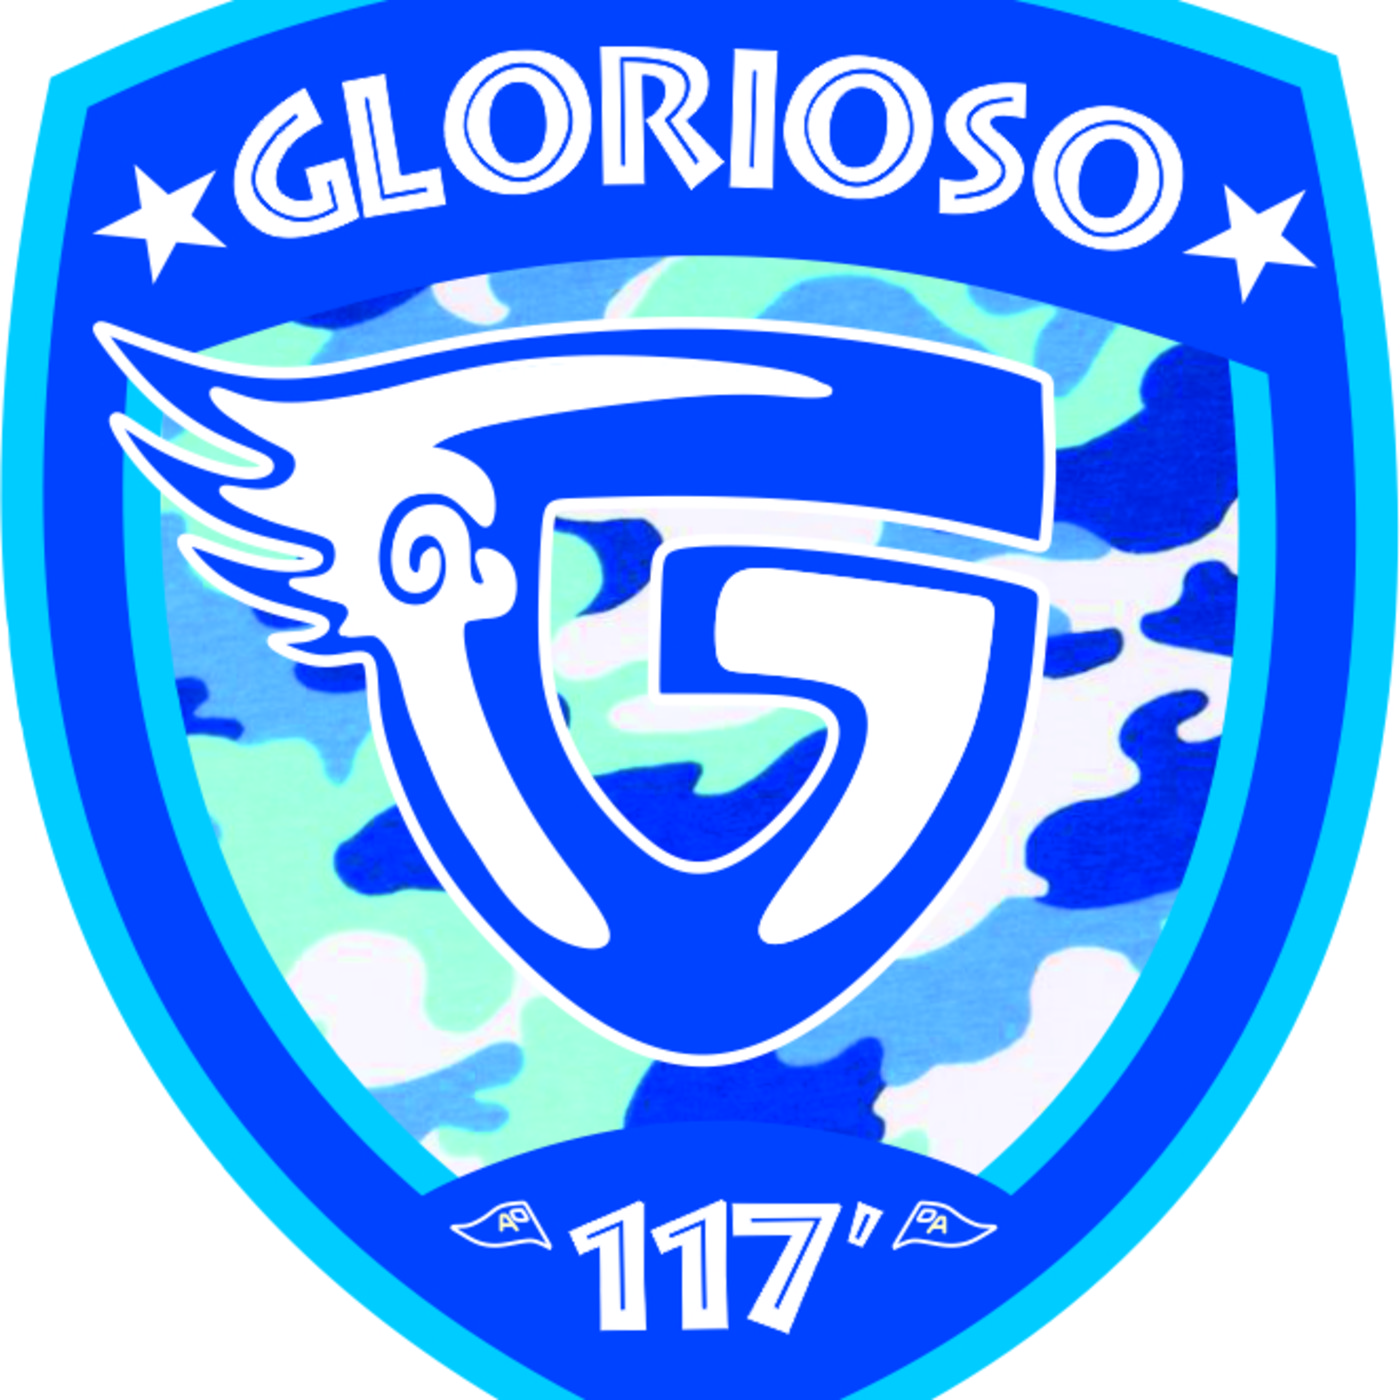 Glorioso117